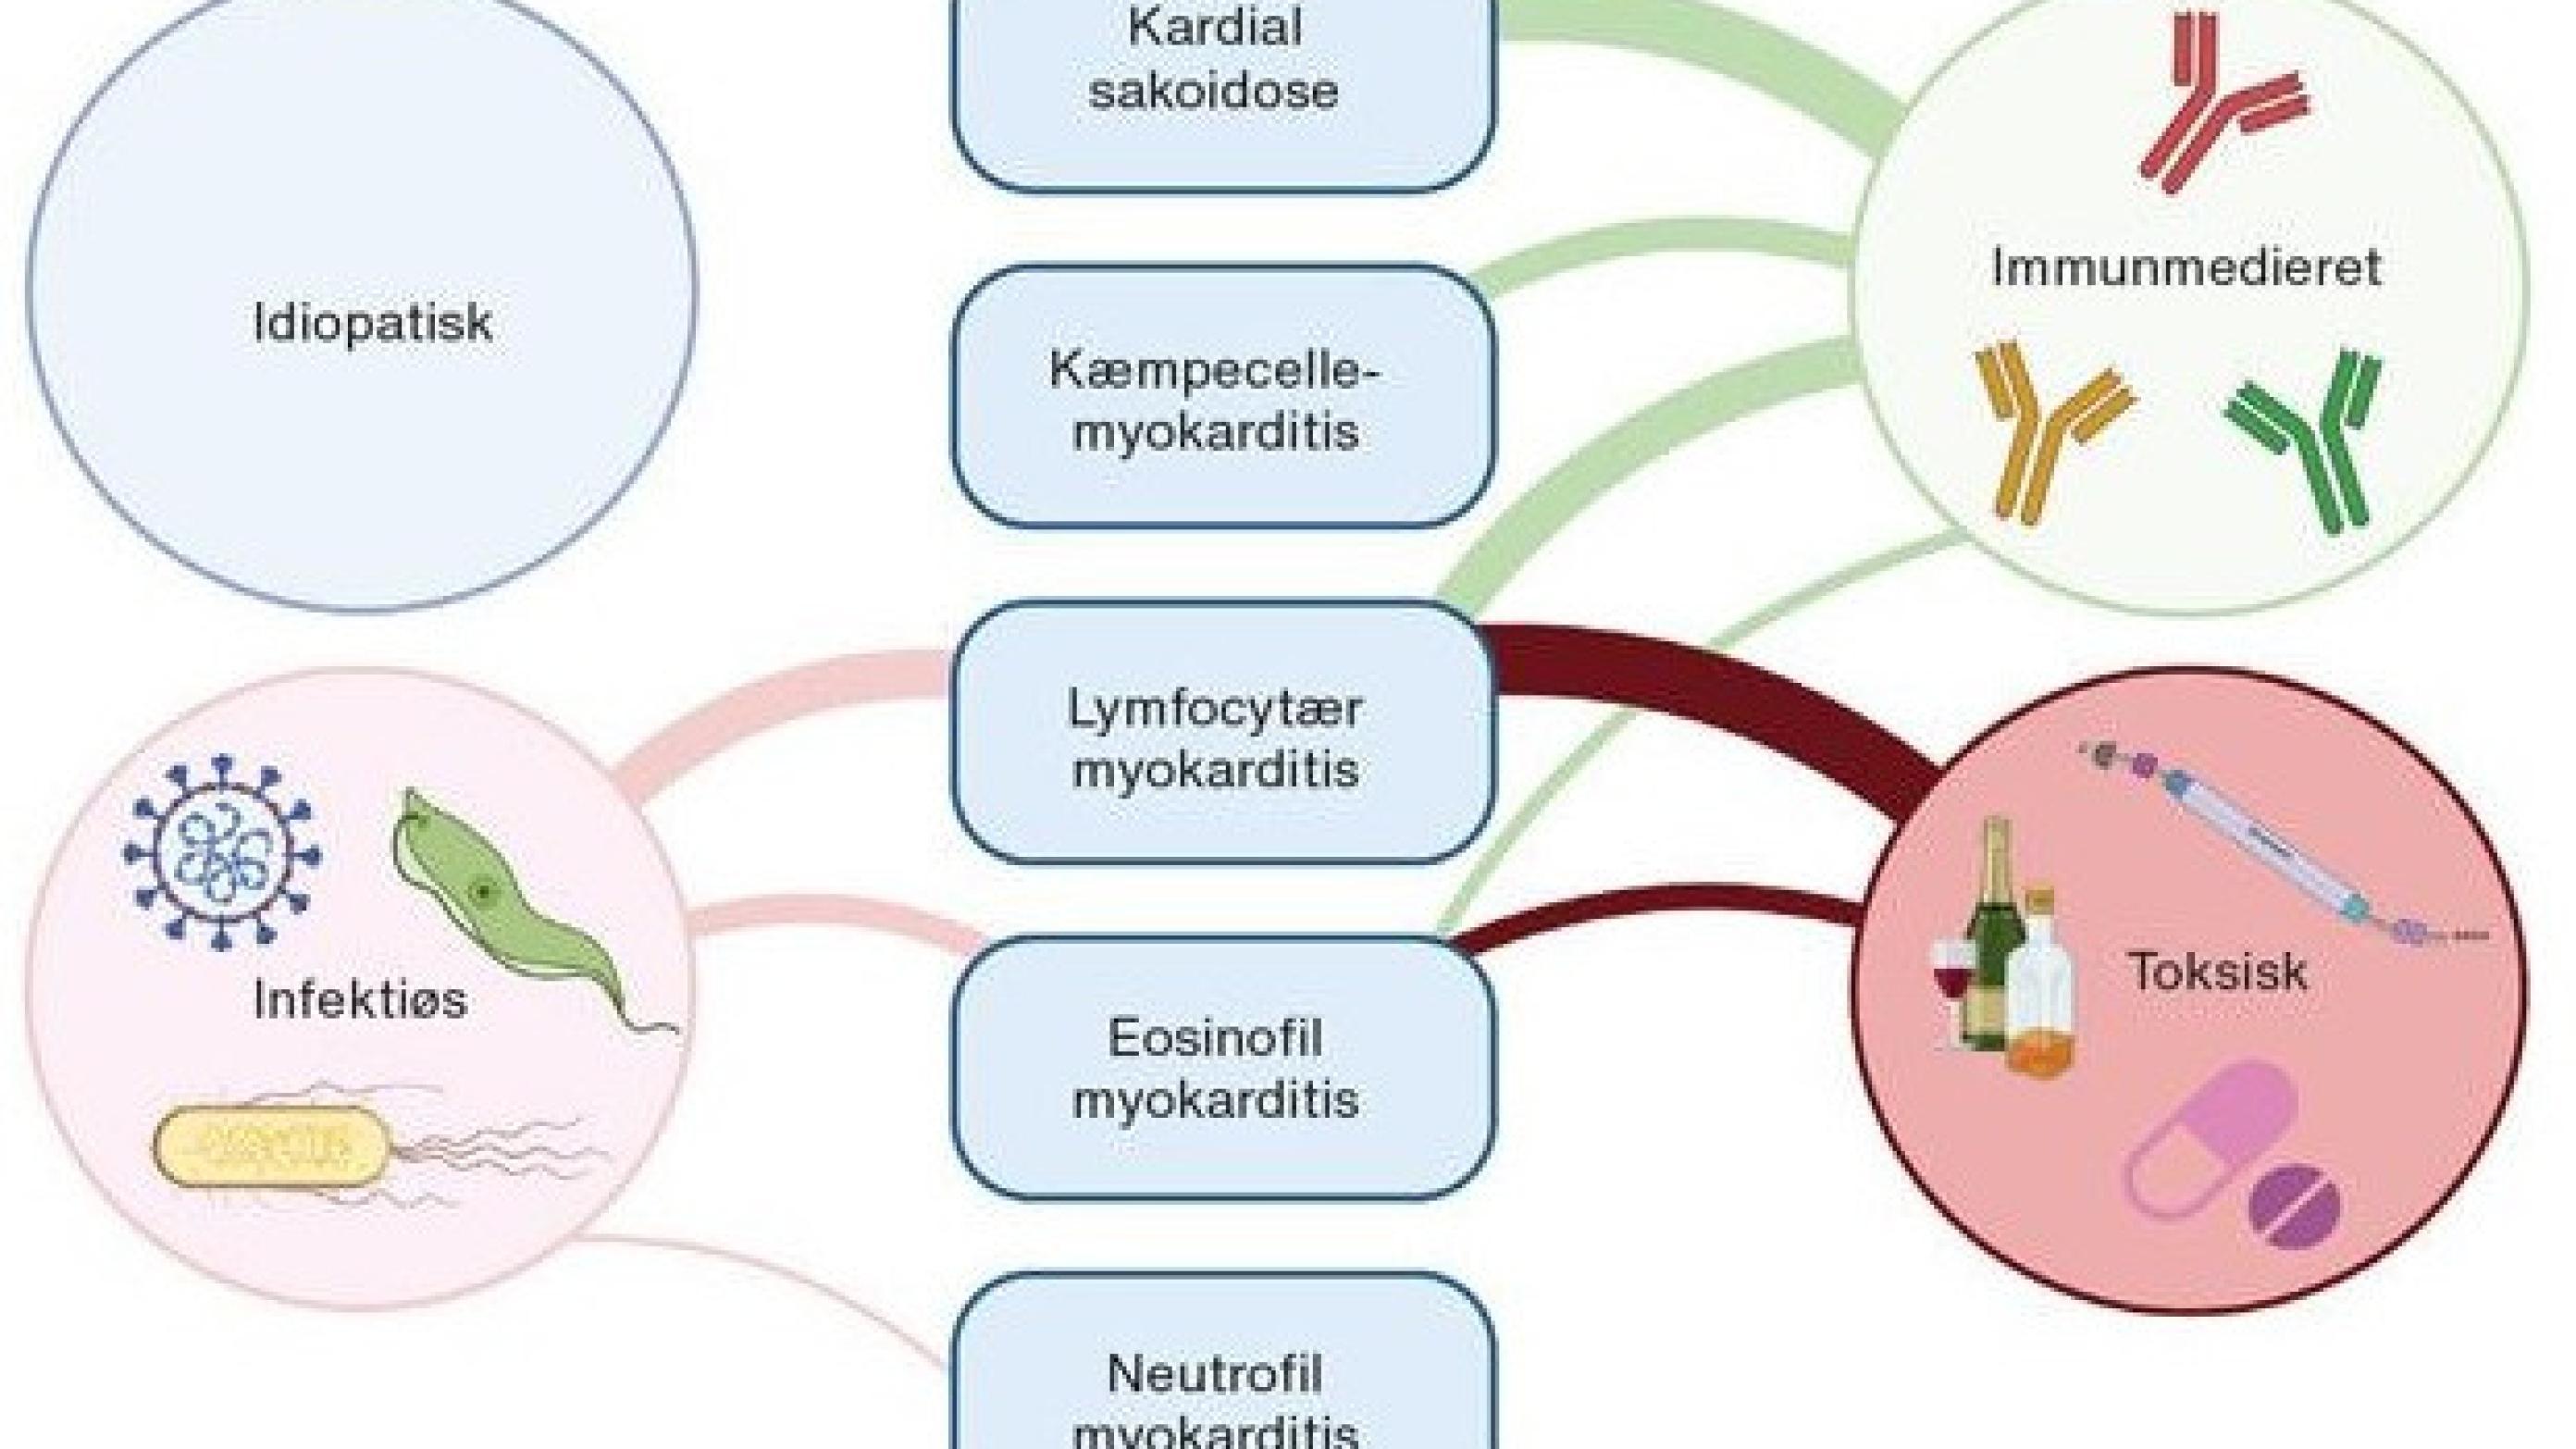 Figur 1 Hyppigste årsager til myokarditis i relation til histologiske karakteristika.